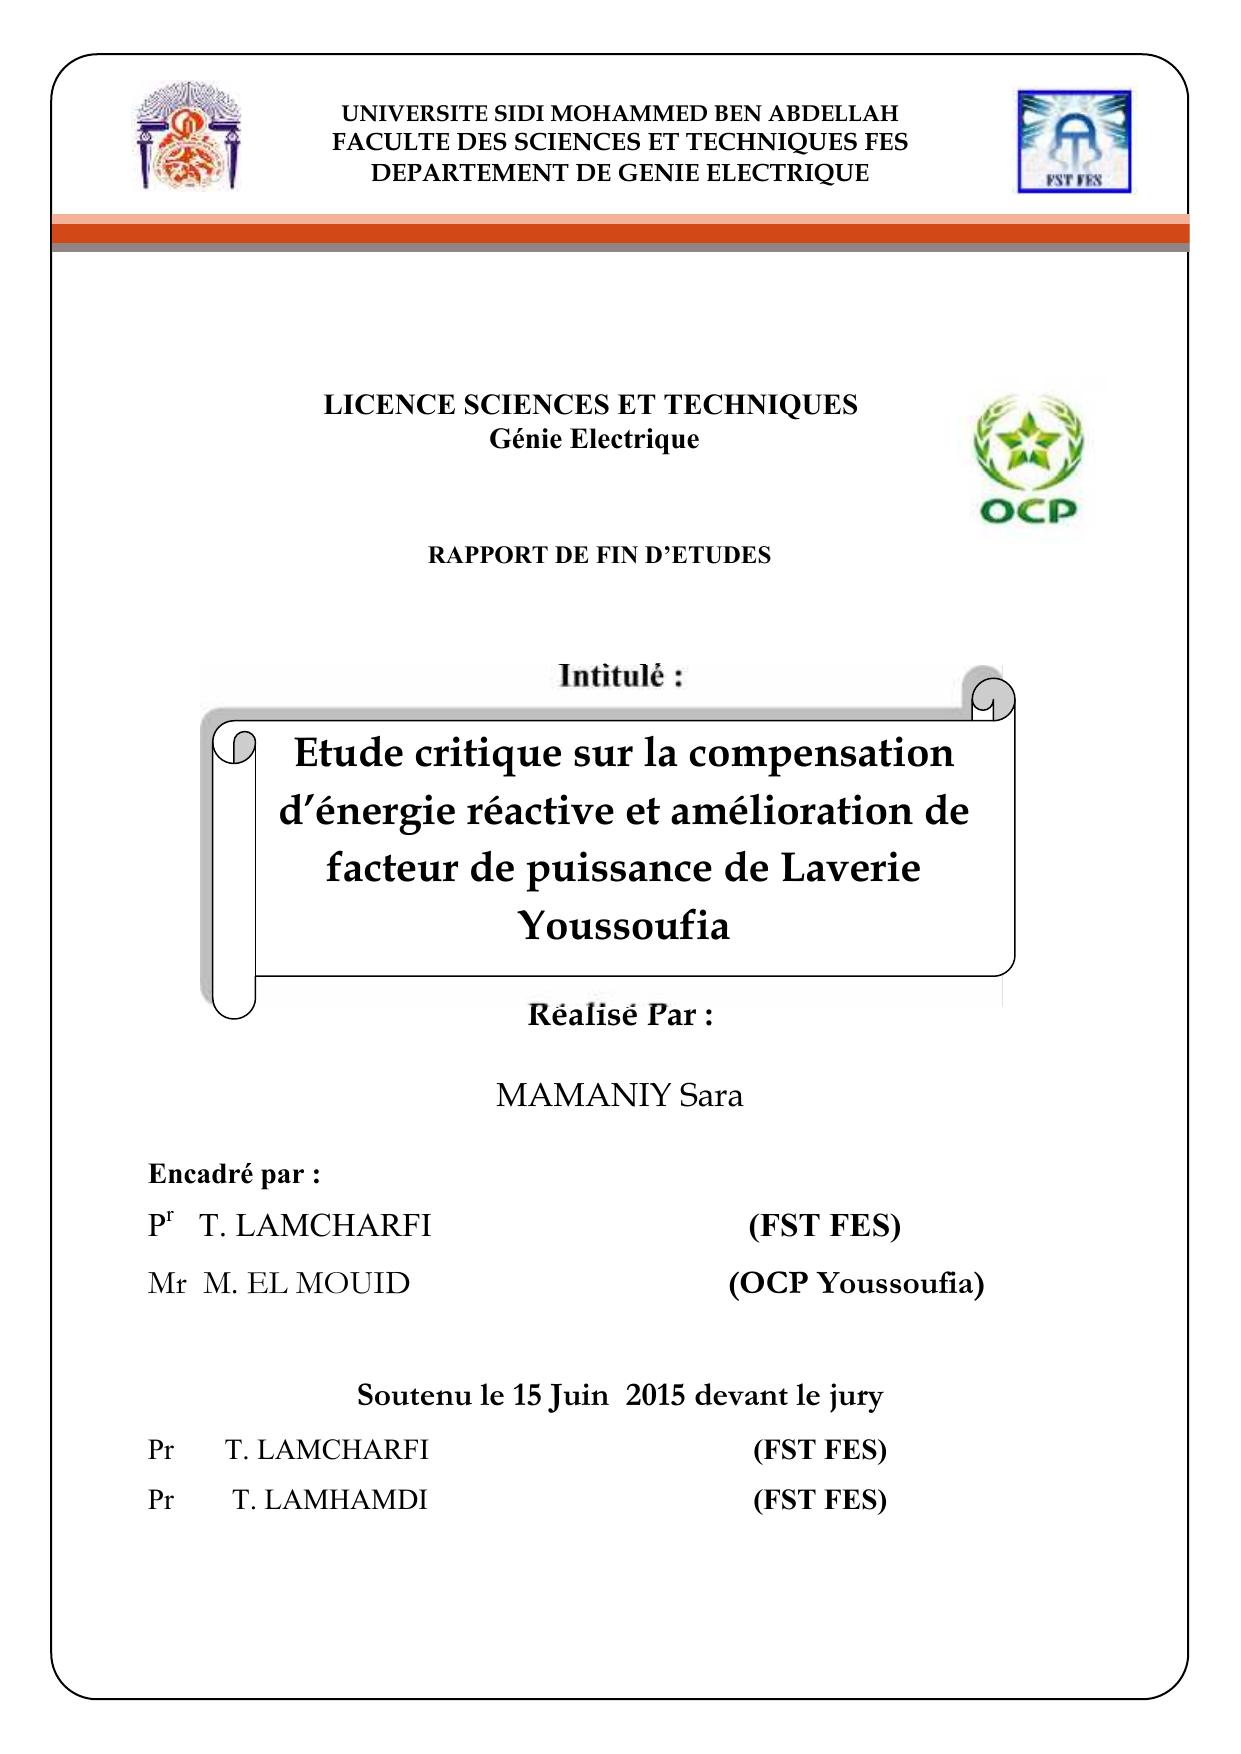 Etude critique sur la compensation d’énergie réactive et amélioration de facteur de puissance de Laverie Youssoufia